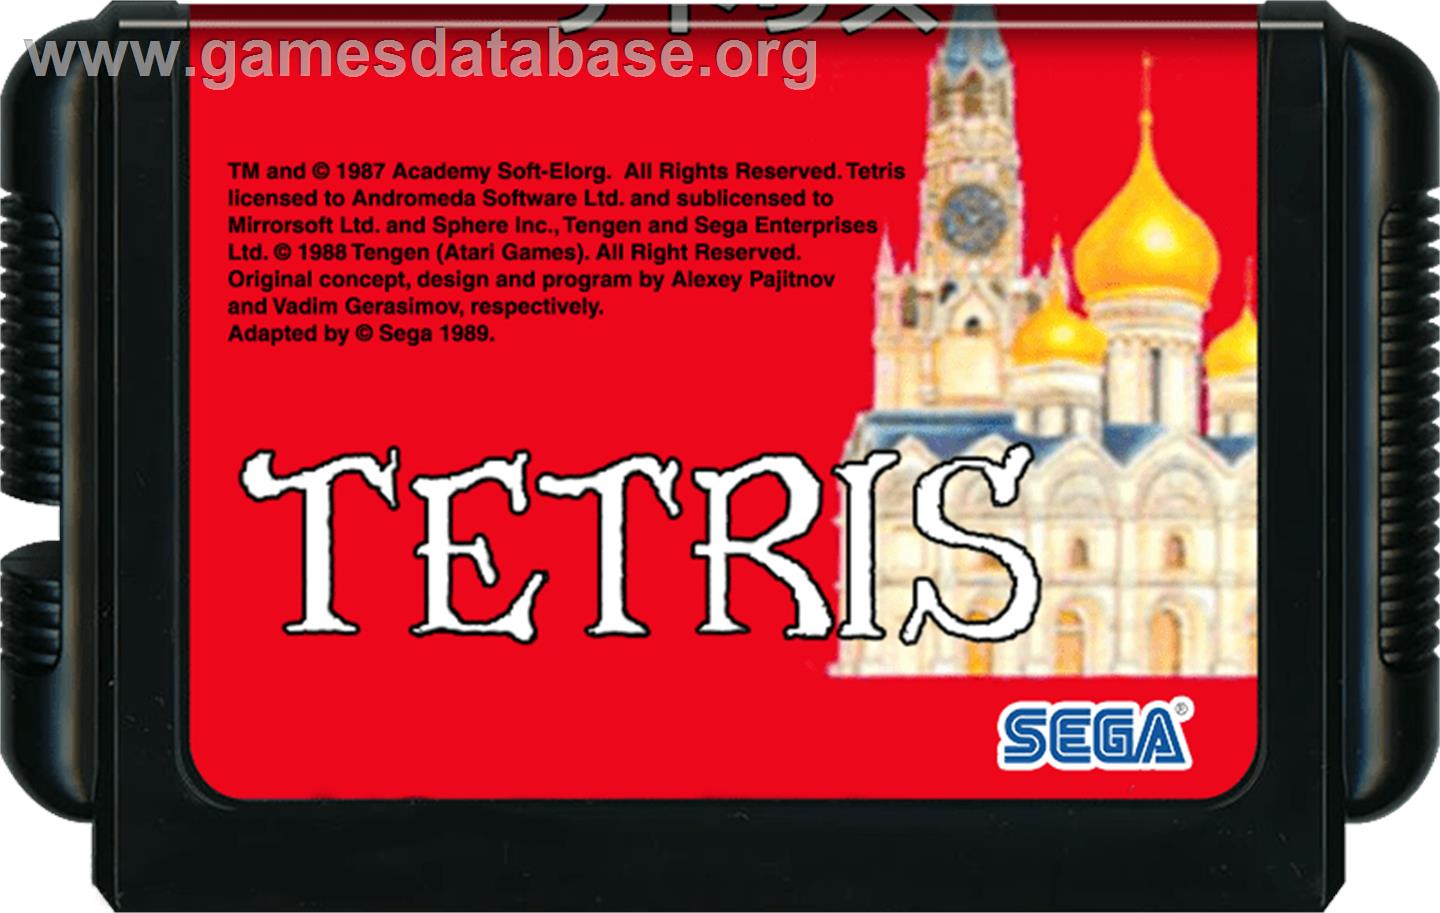 Tetris - Sega Genesis - Artwork - Cartridge